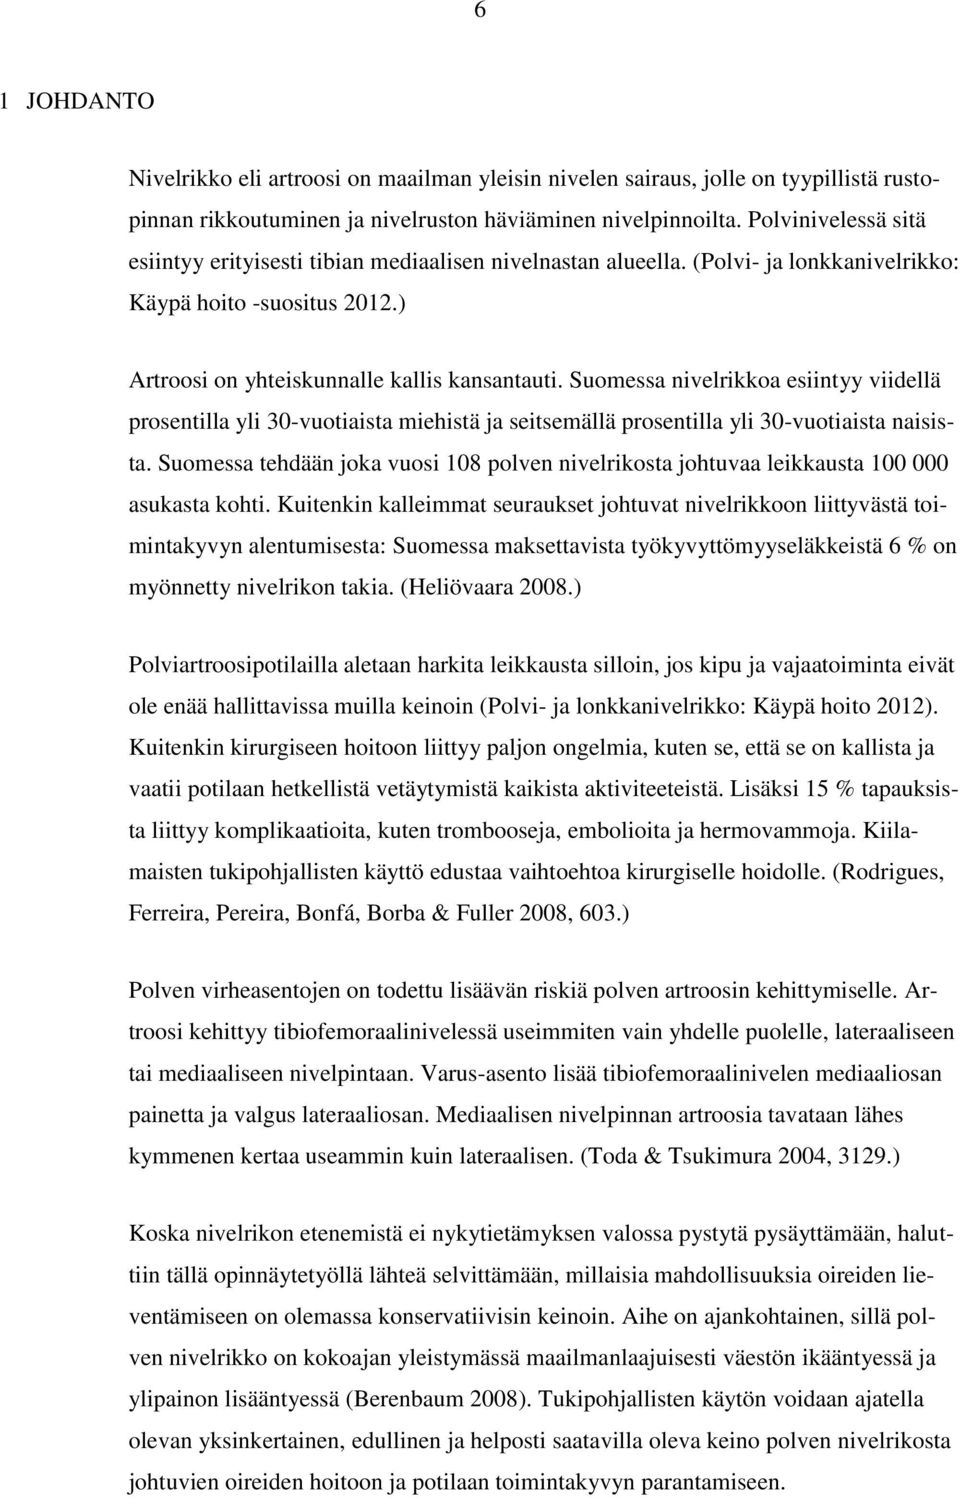 Suomessa nivelrikkoa esiintyy viidellä prosentilla yli 30-vuotiaista miehistä ja seitsemällä prosentilla yli 30-vuotiaista naisista.